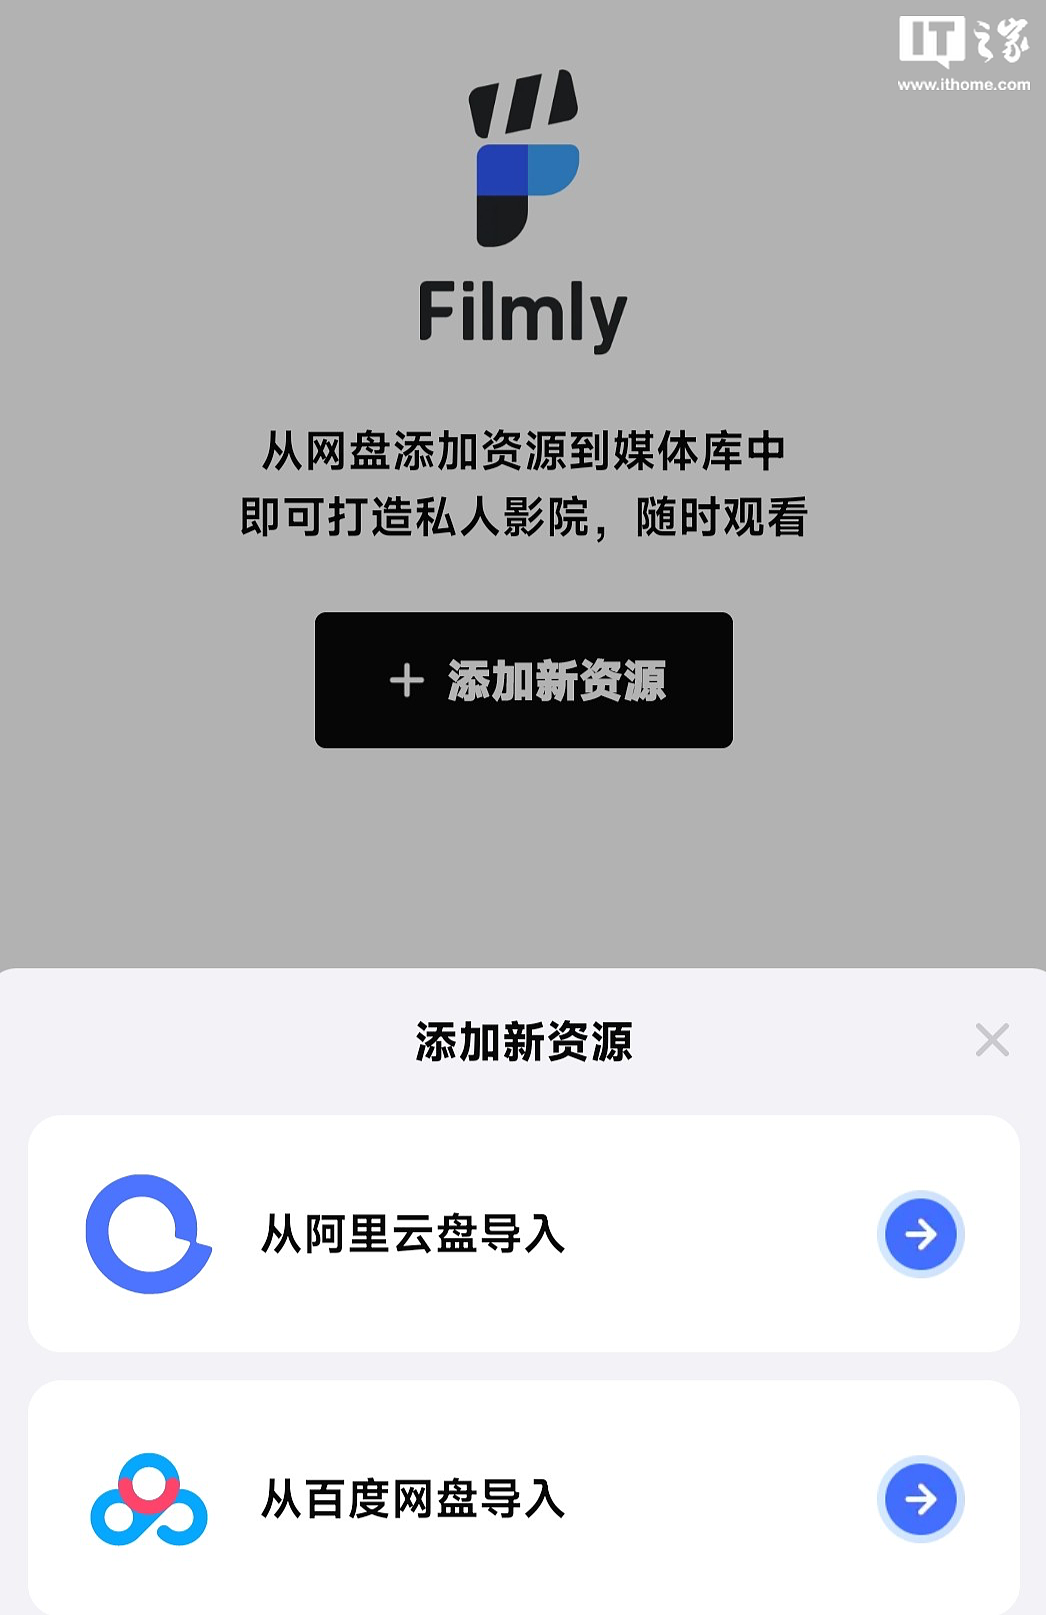 网易推出媒体库播放器应用 Filmly：支持直连网盘影视资源、暂不支持本地视频 - 3